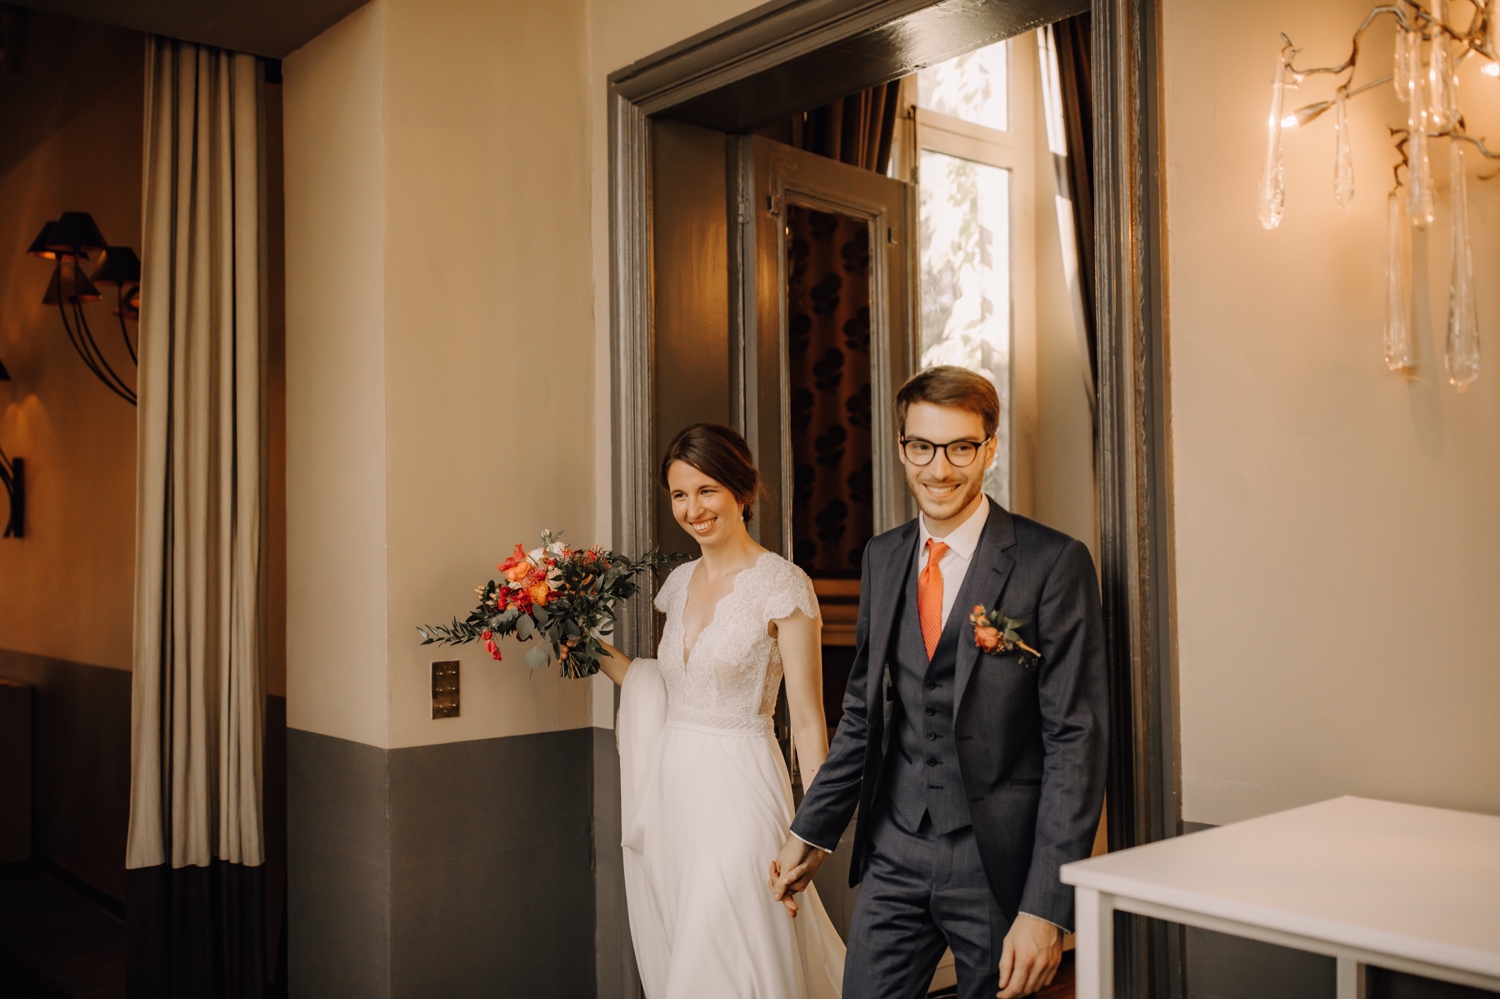 Huwelijksfotograaf Limburg - bruidspaar maakt intrede in feestzaal